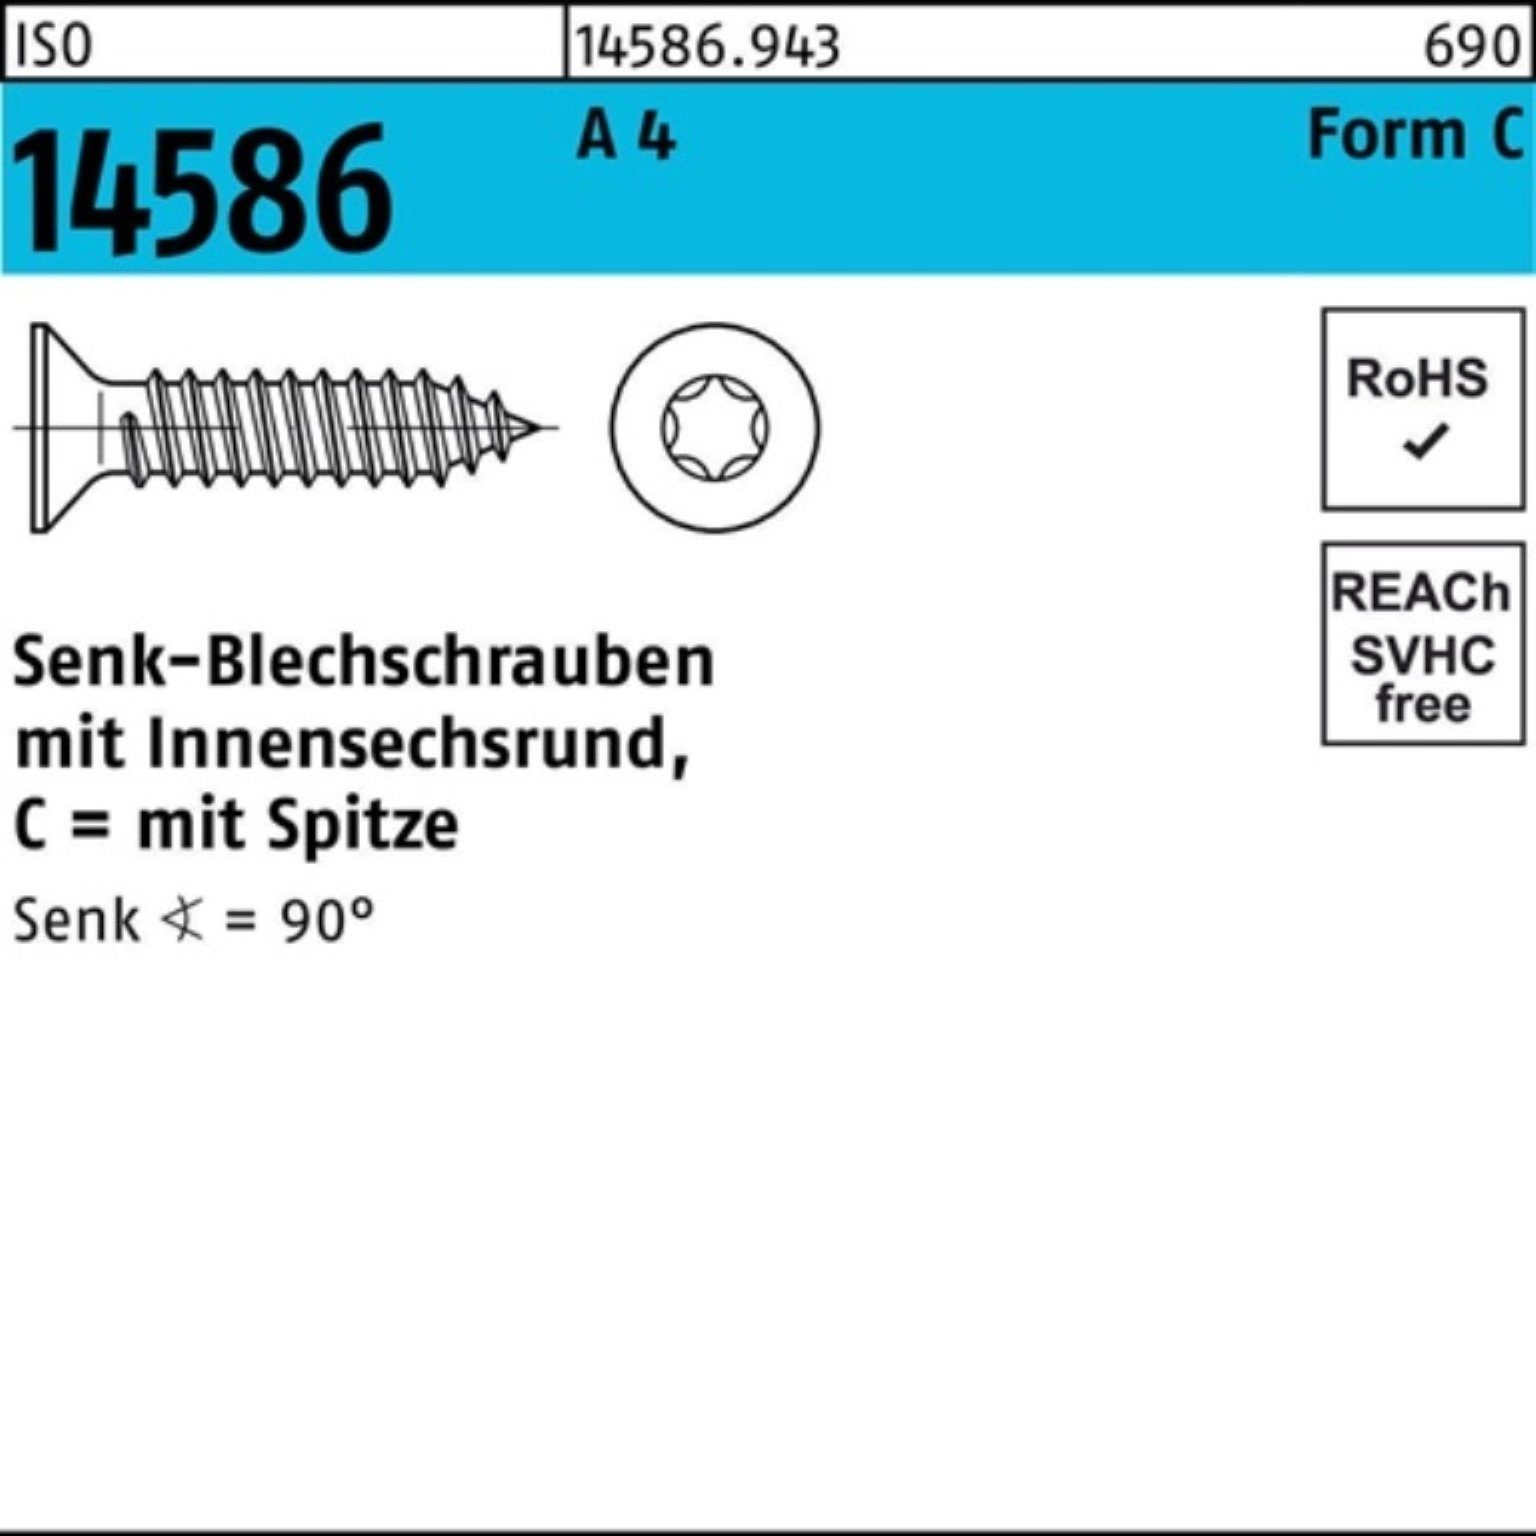 Reyher Schraube 1000er Pack Senkblechschraube ISO 14586 ISR/Spitze 3,5x 25-T15 A 4 100